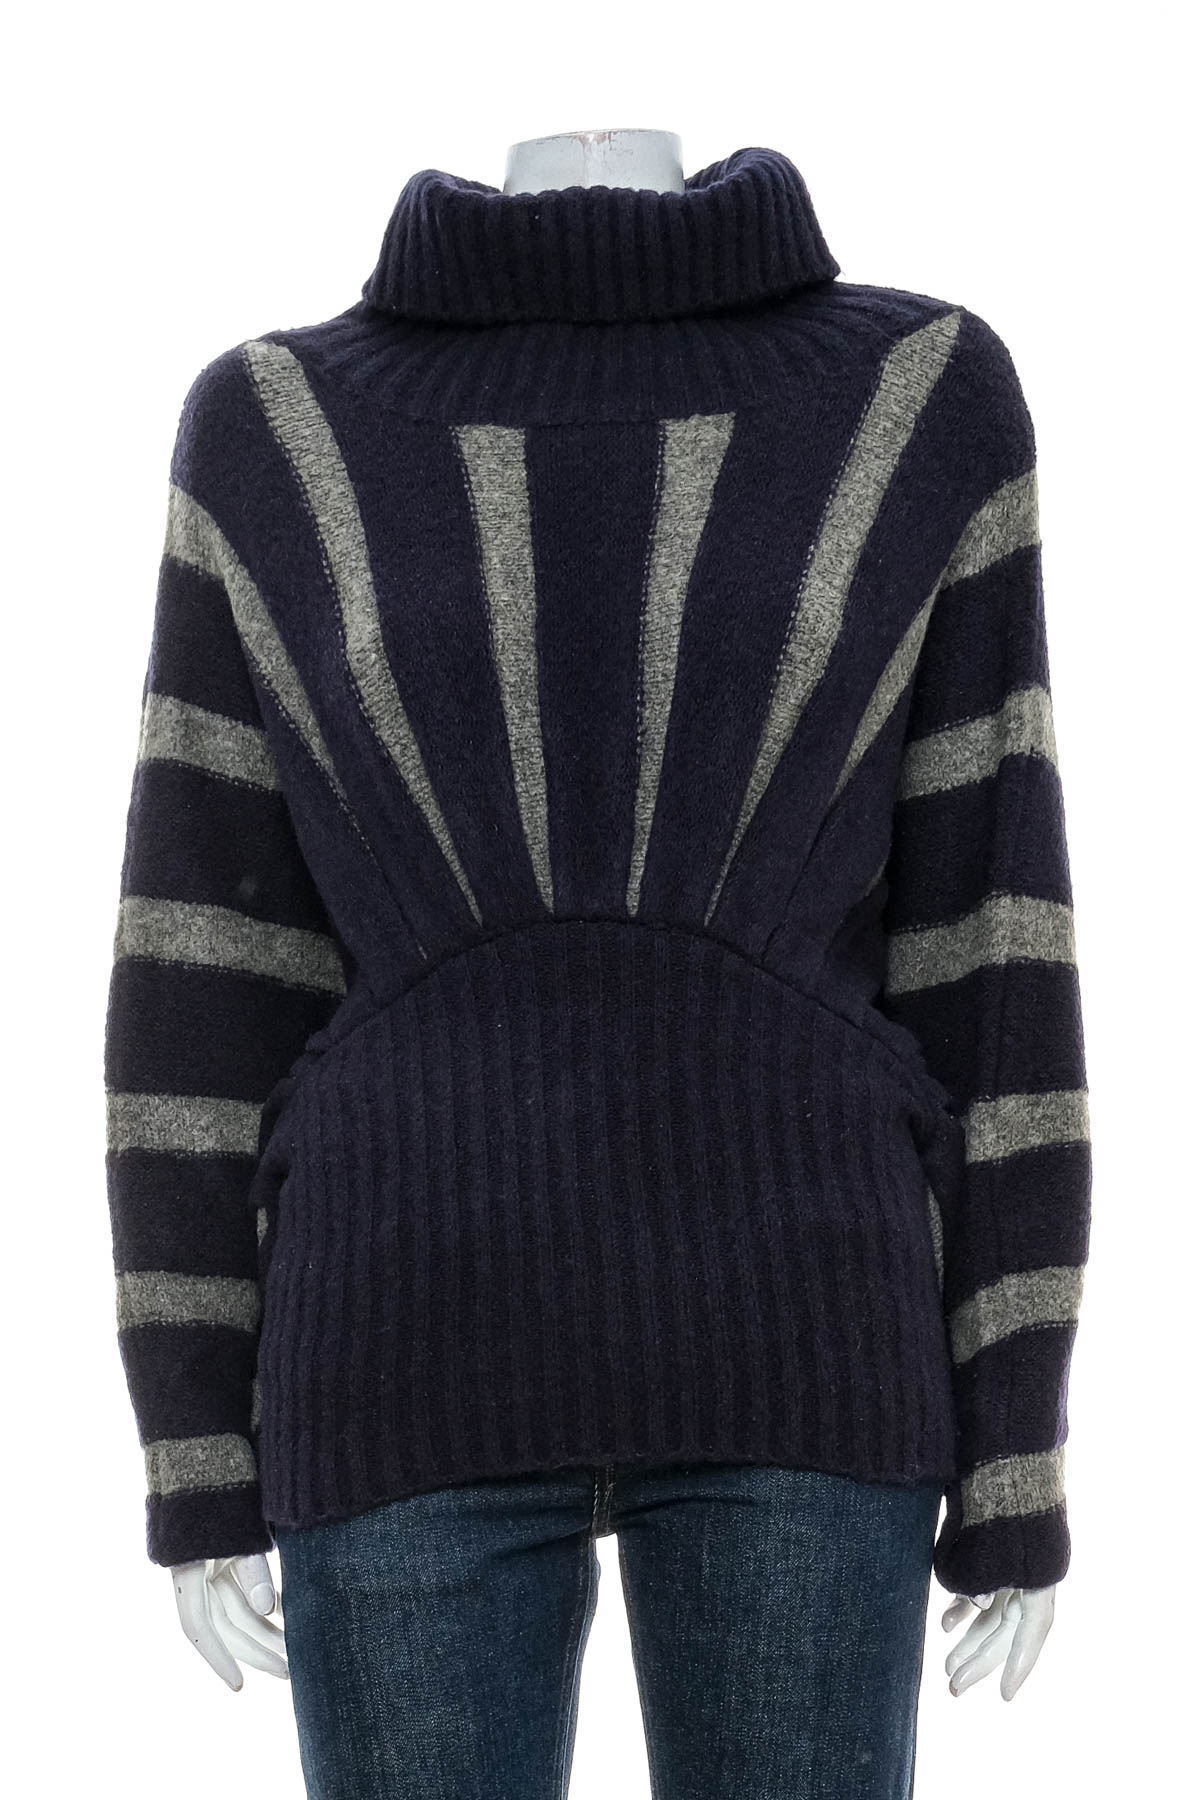 Women's sweater - Preziosa Collection - 0